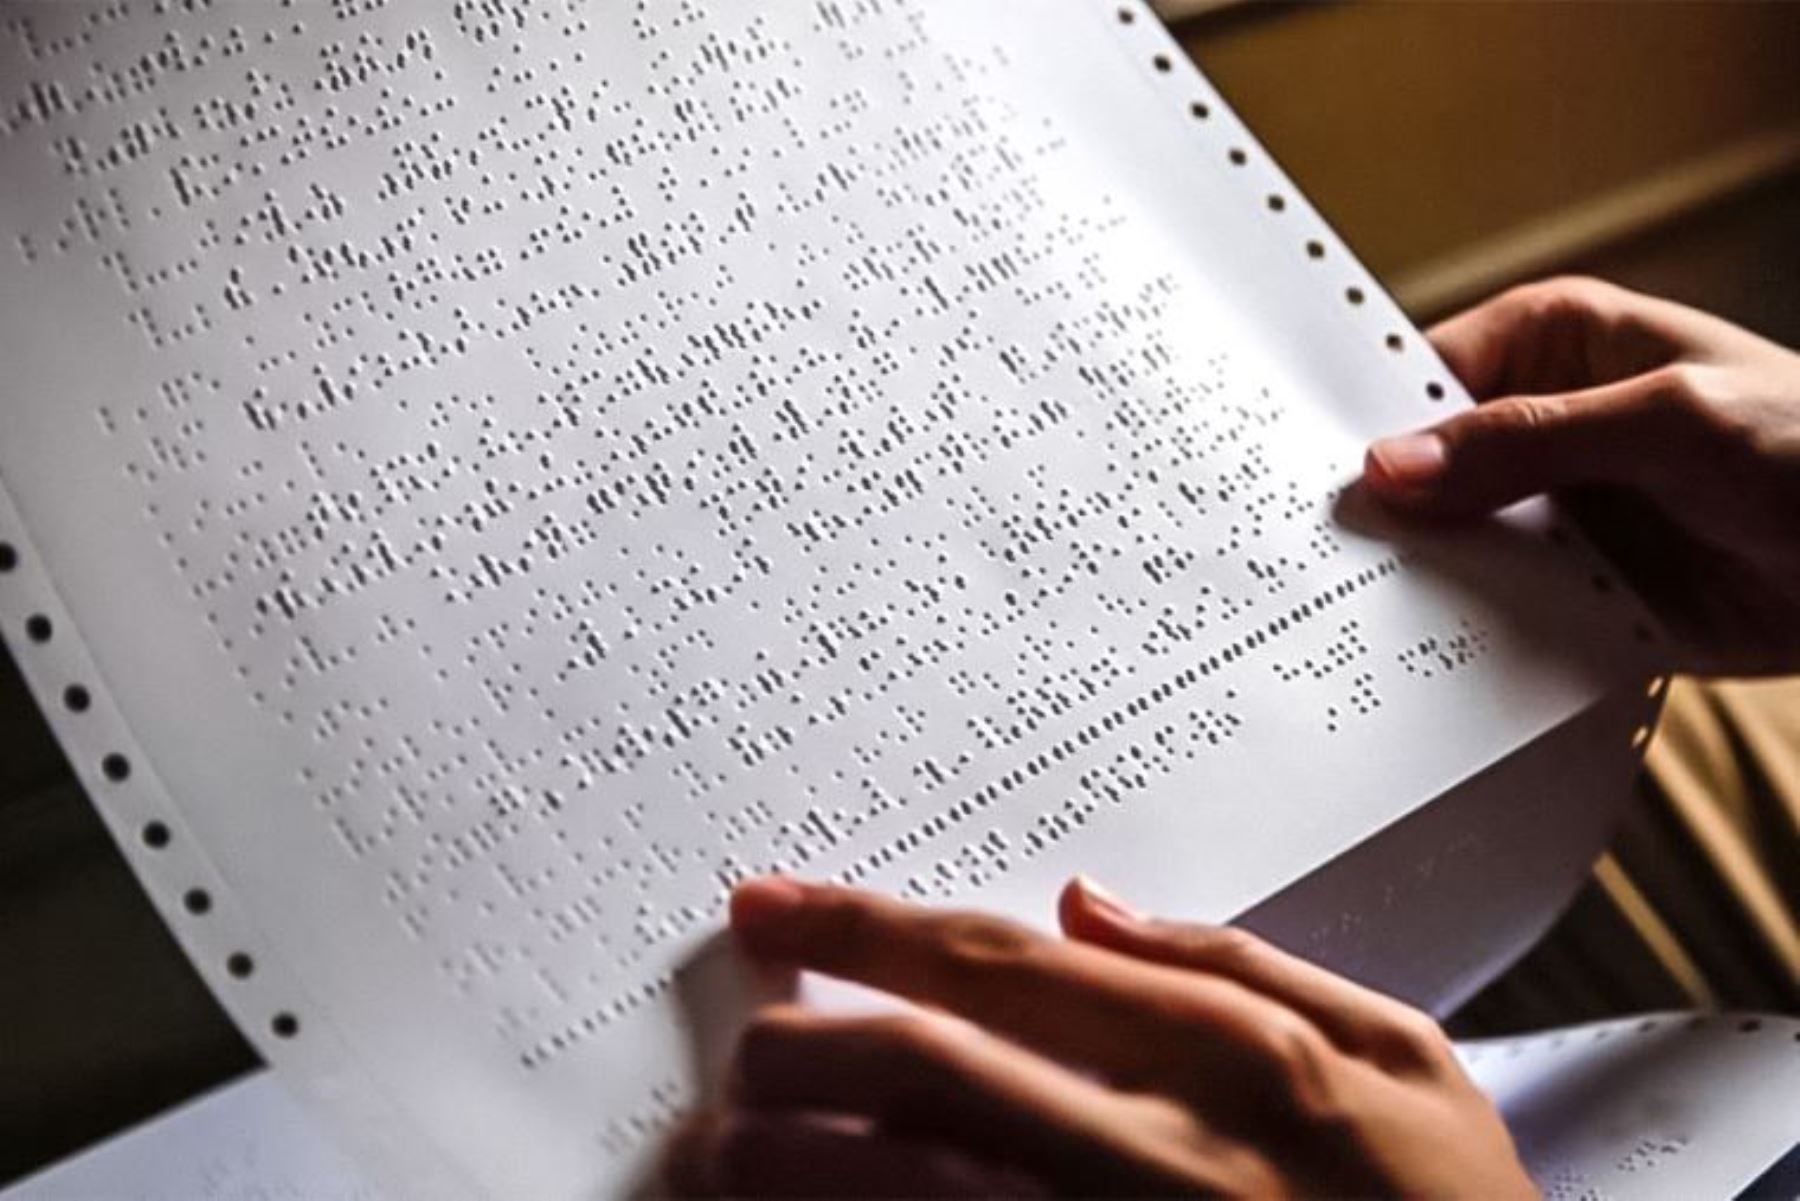 Peruanos con discapacidad visual pueden acceder a 50,000 obras en sistema Braille. Foto: ANDINA/difusión.